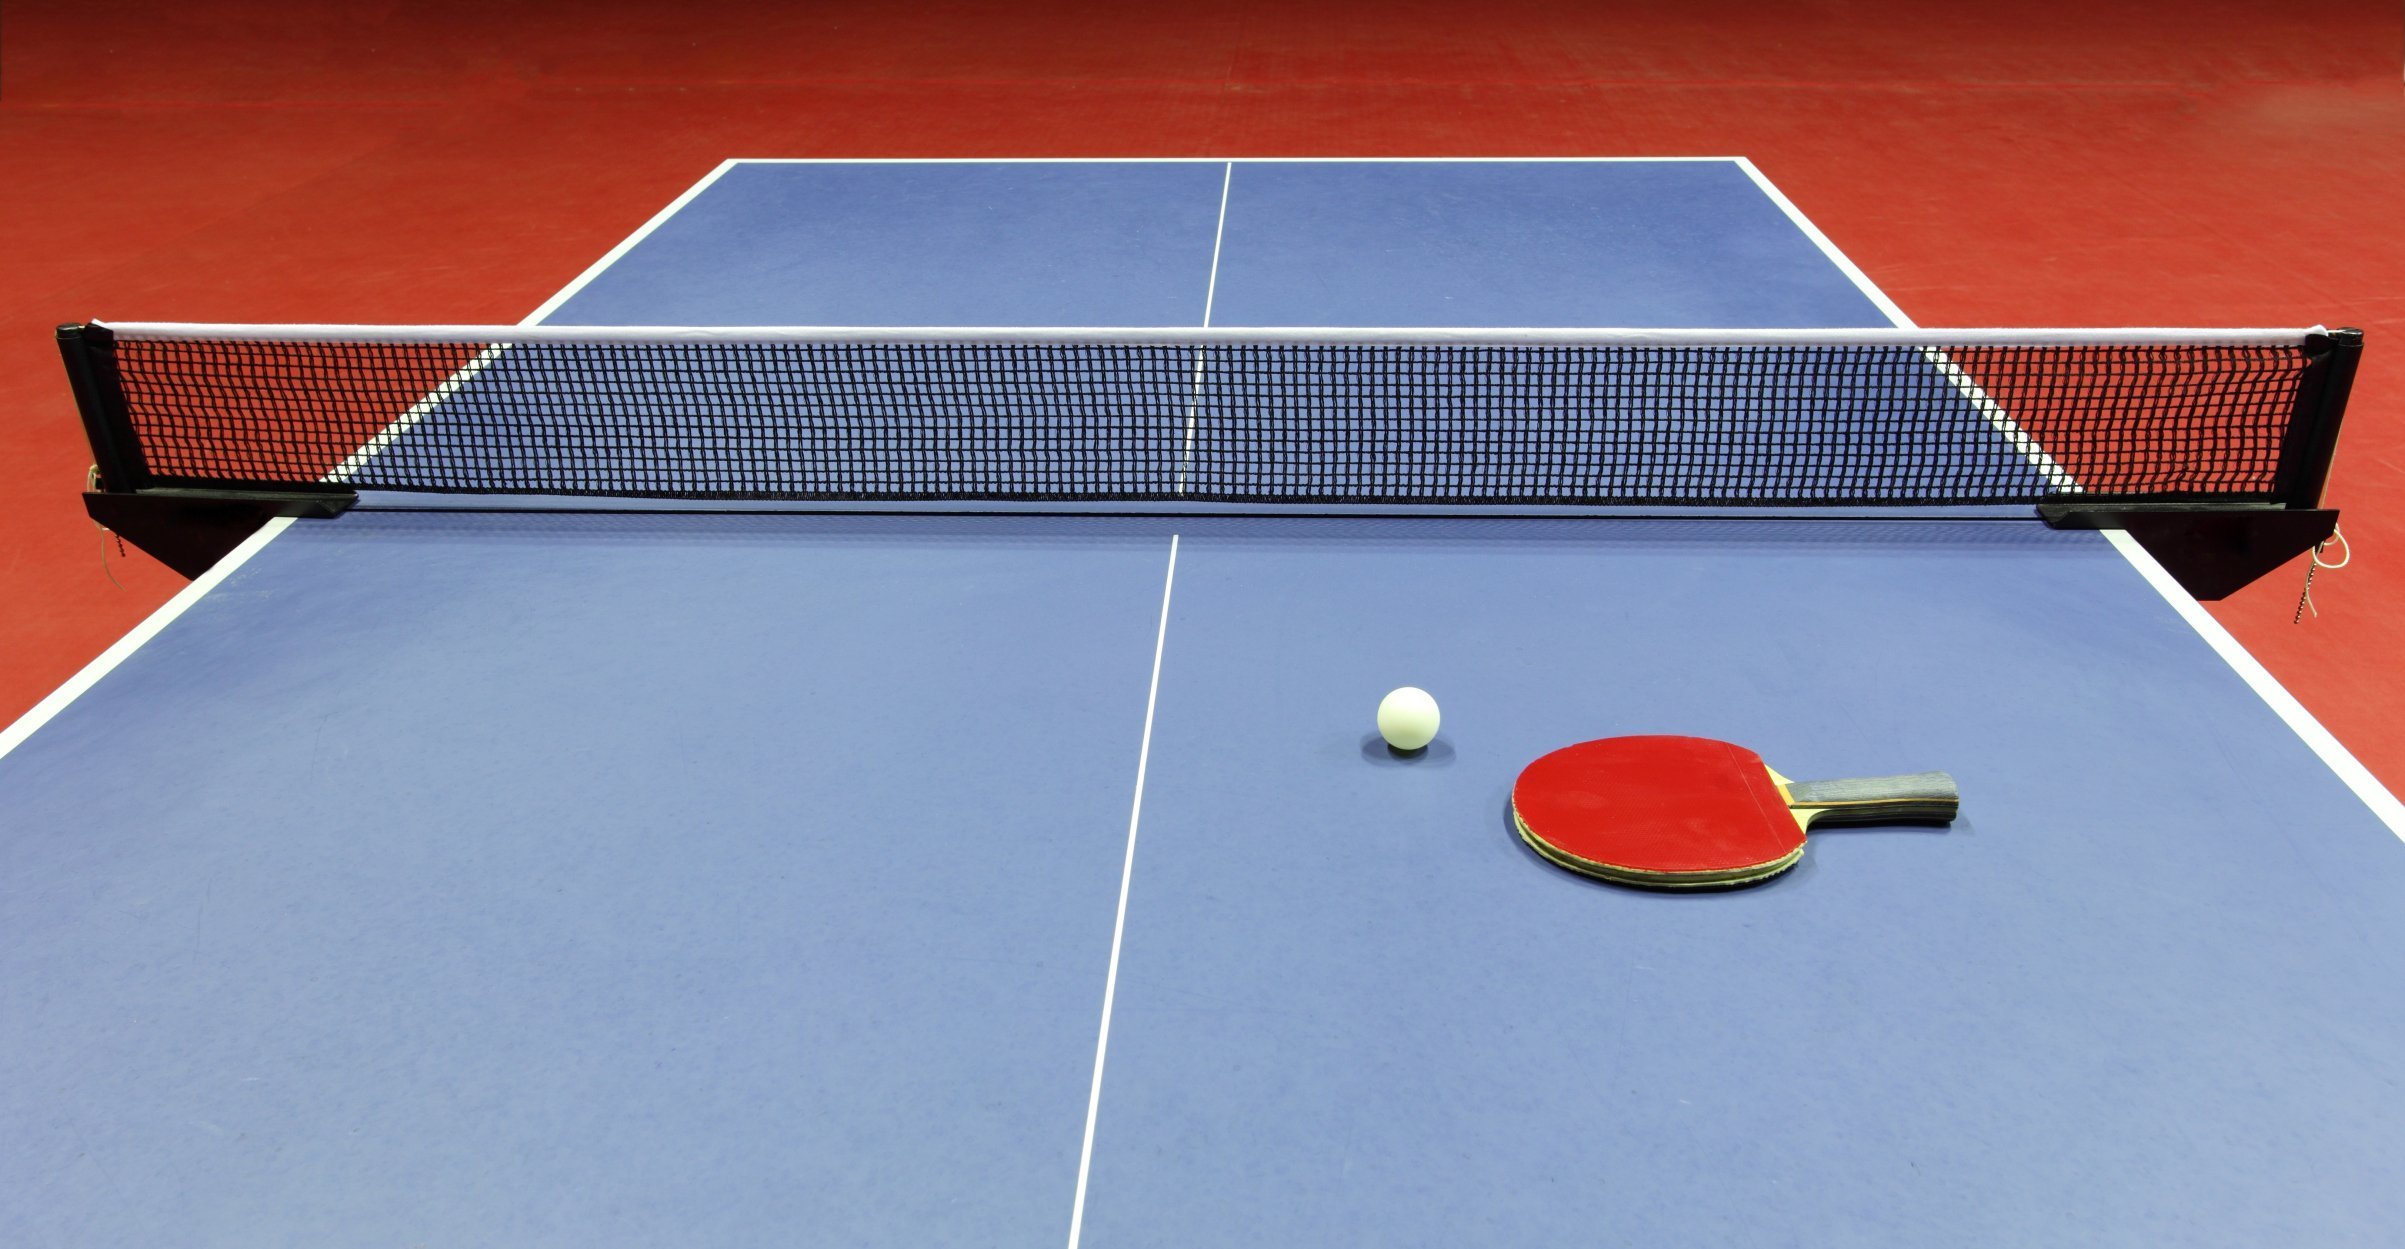 Теннис сетка игры. Настольный теннис (стол т1223). Stol Tennis” “Ping-Pong”. Пинпонг и настольный теннис. Теннисный стол пинг понг.